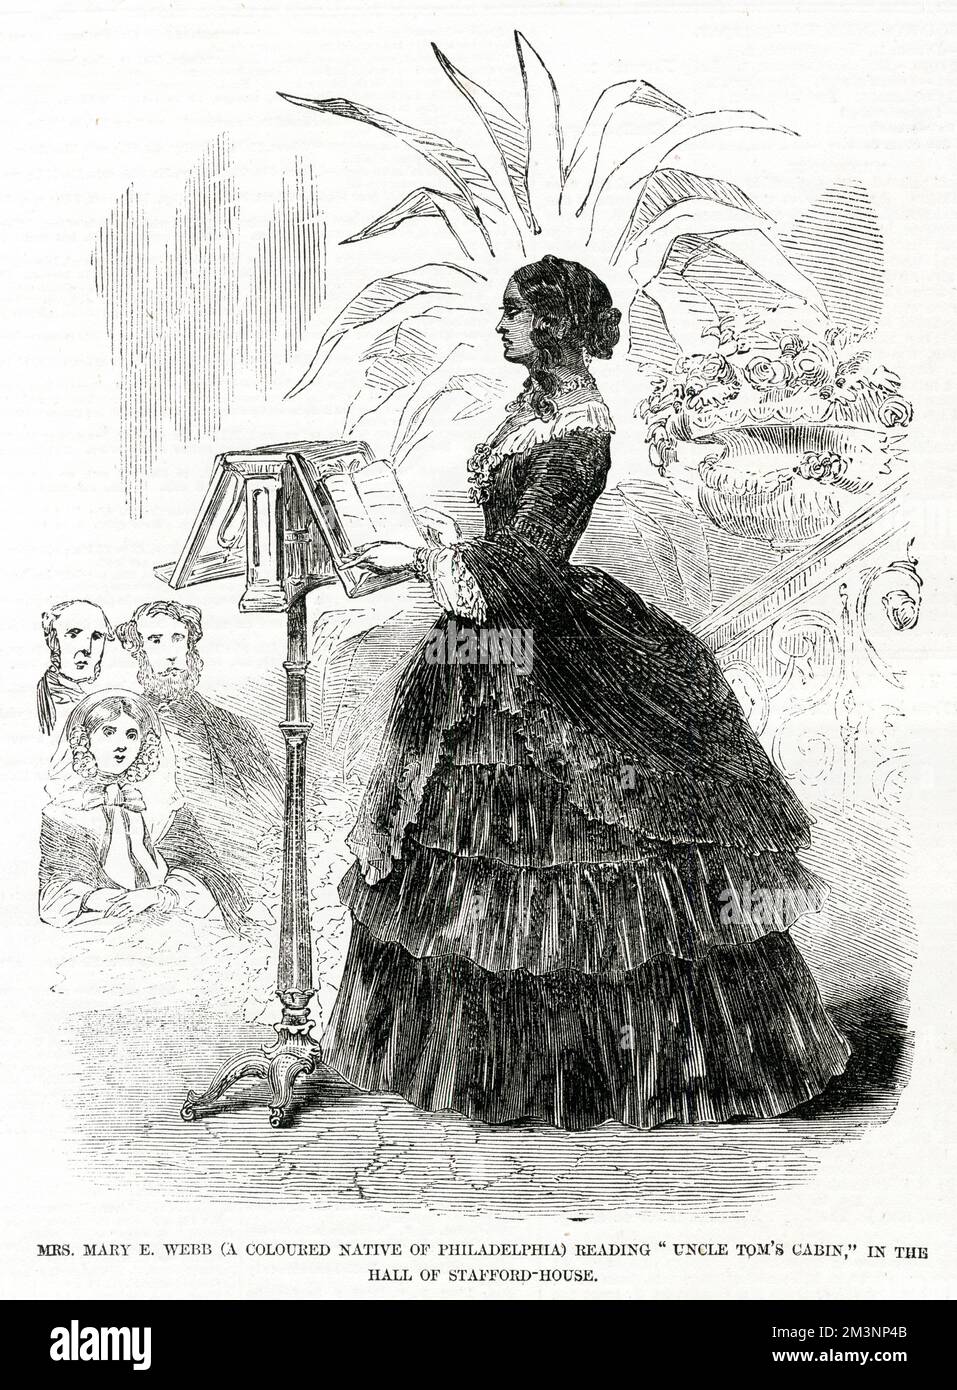 Mme Mary E Webb (originaire de Philadelphie en couleur), listant "Uncle Tom's Cabin" dans le hall de la Maison Stafford, Londres, domicile des Duchesse de Sutherland. Date: 1856 Banque D'Images